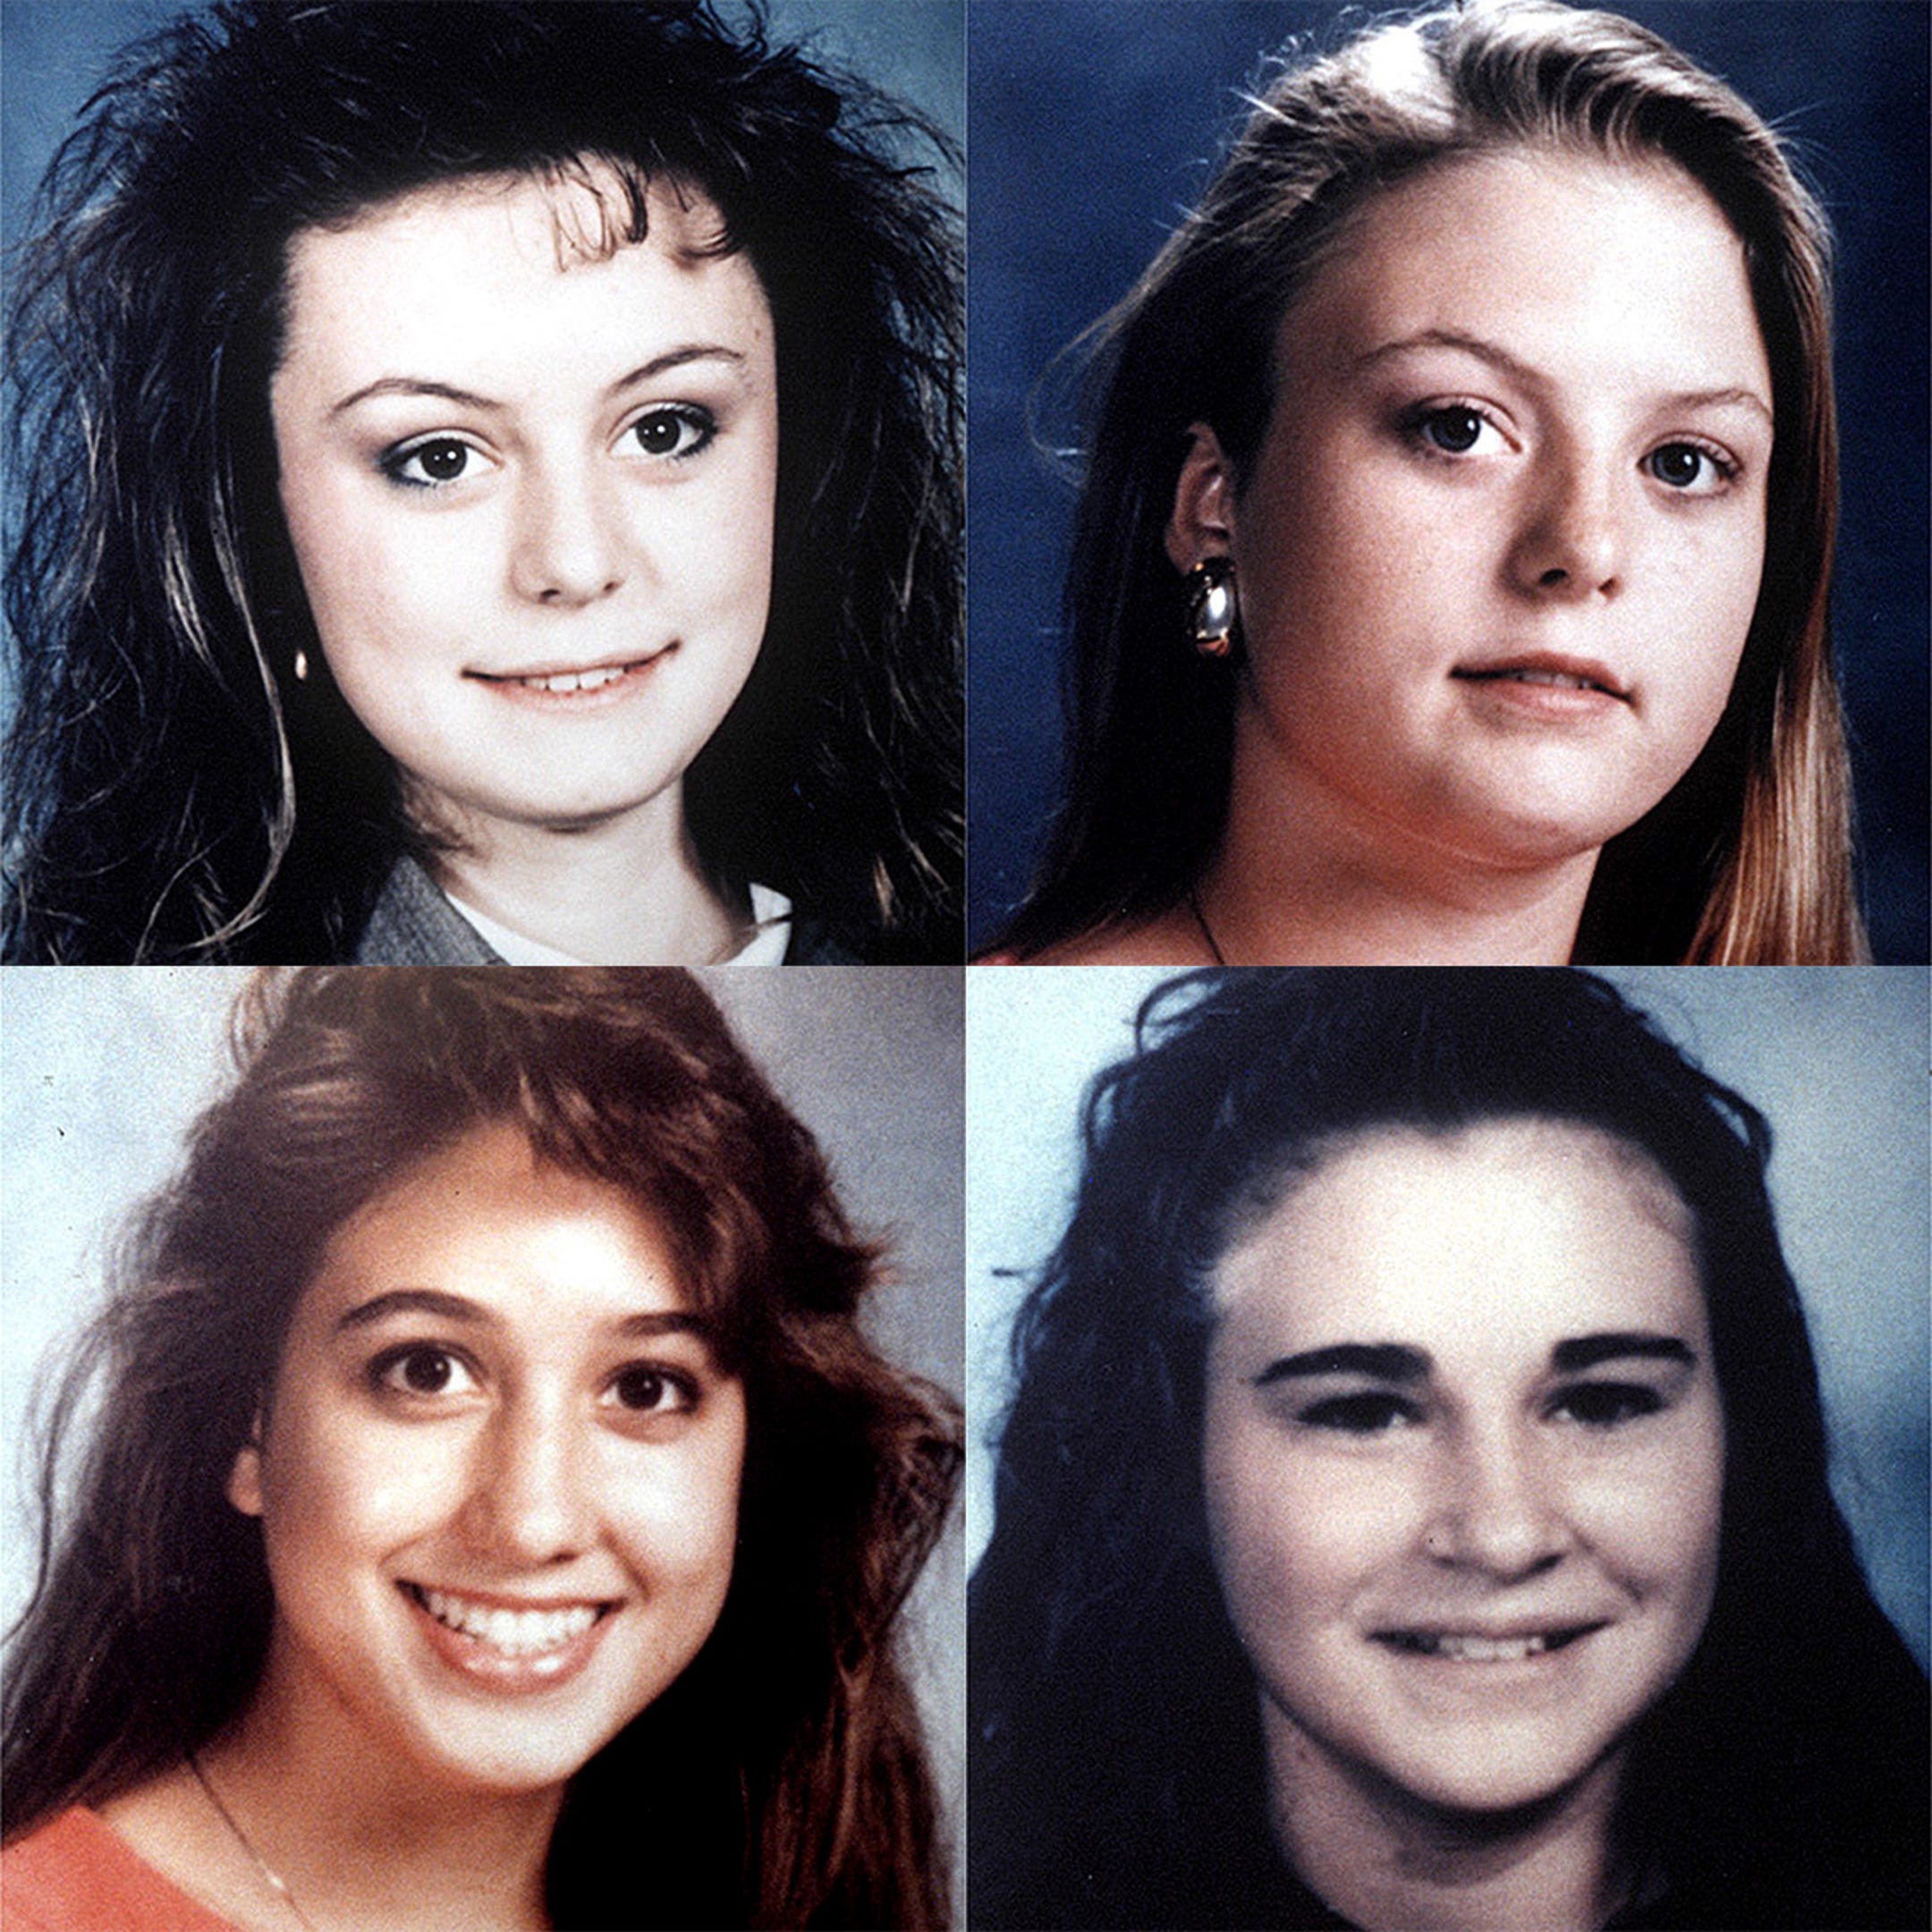 1991 Austin yogurt shop murders case unresolved as anniversary looms